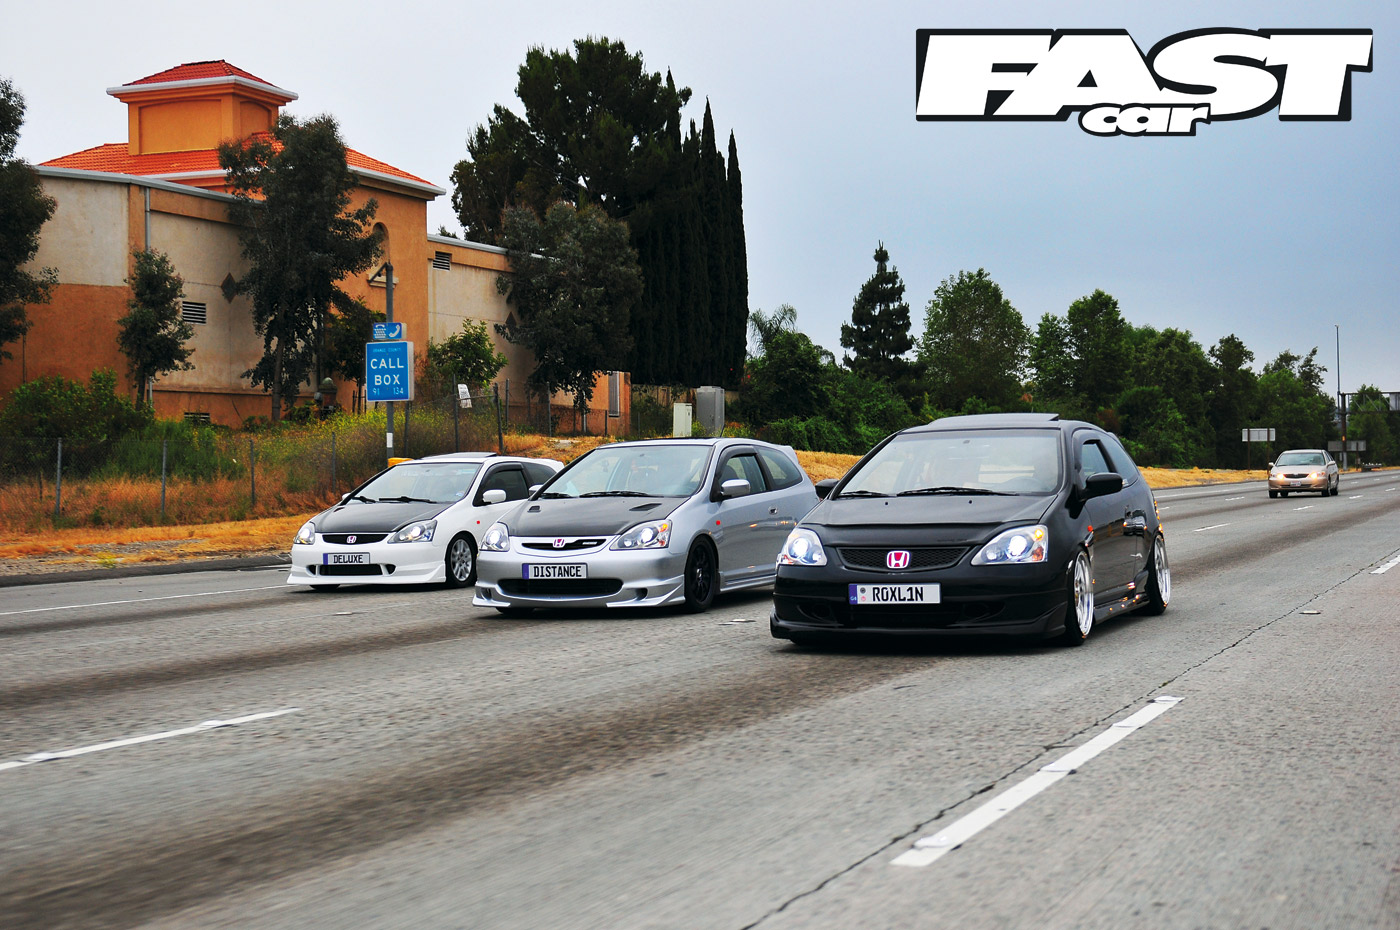 FastCar – Wallpaper